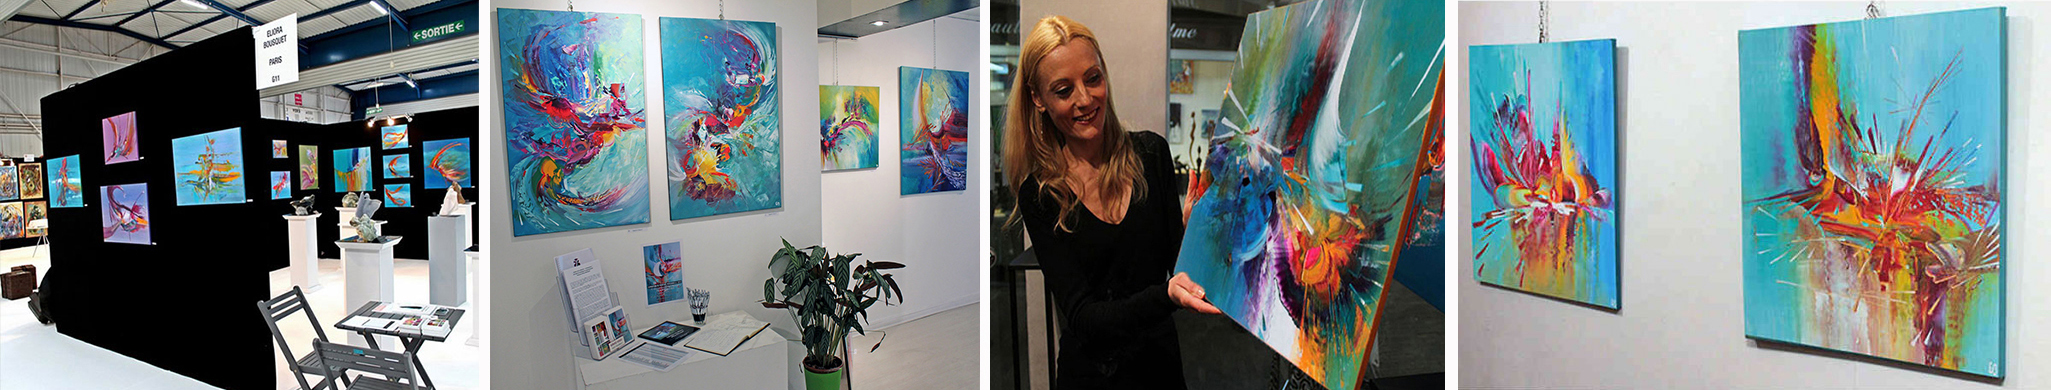 Painter Eliora Bousquet exhibiting her artworks in Paris